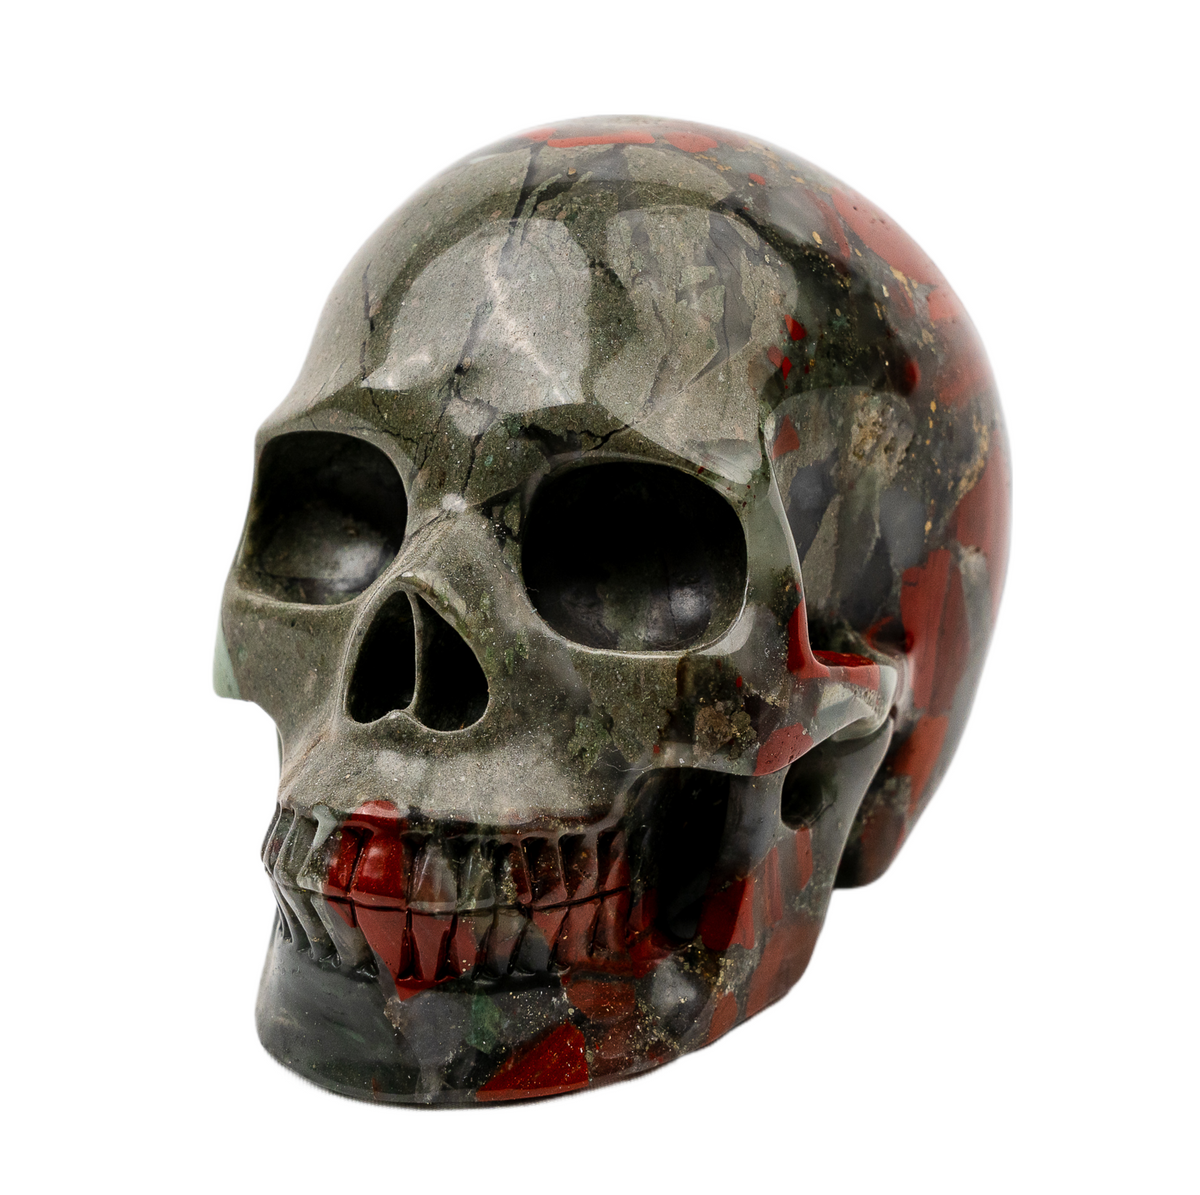 Bloodstone 5" Large Crystal Skull